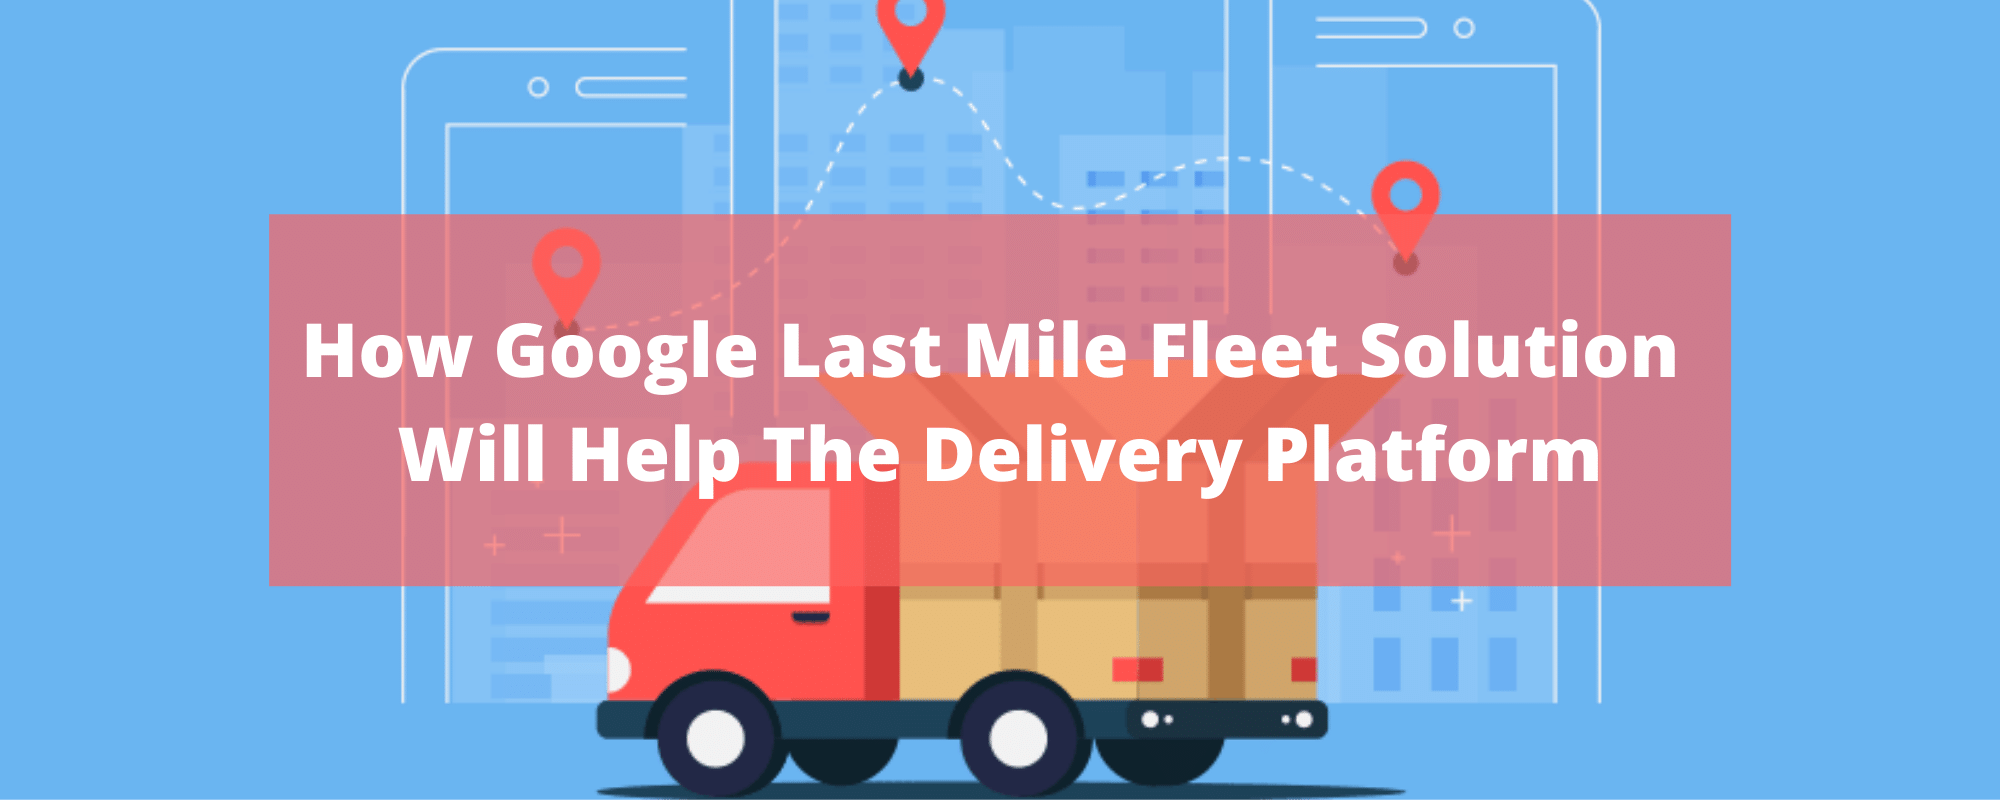 google last mile delivery platform